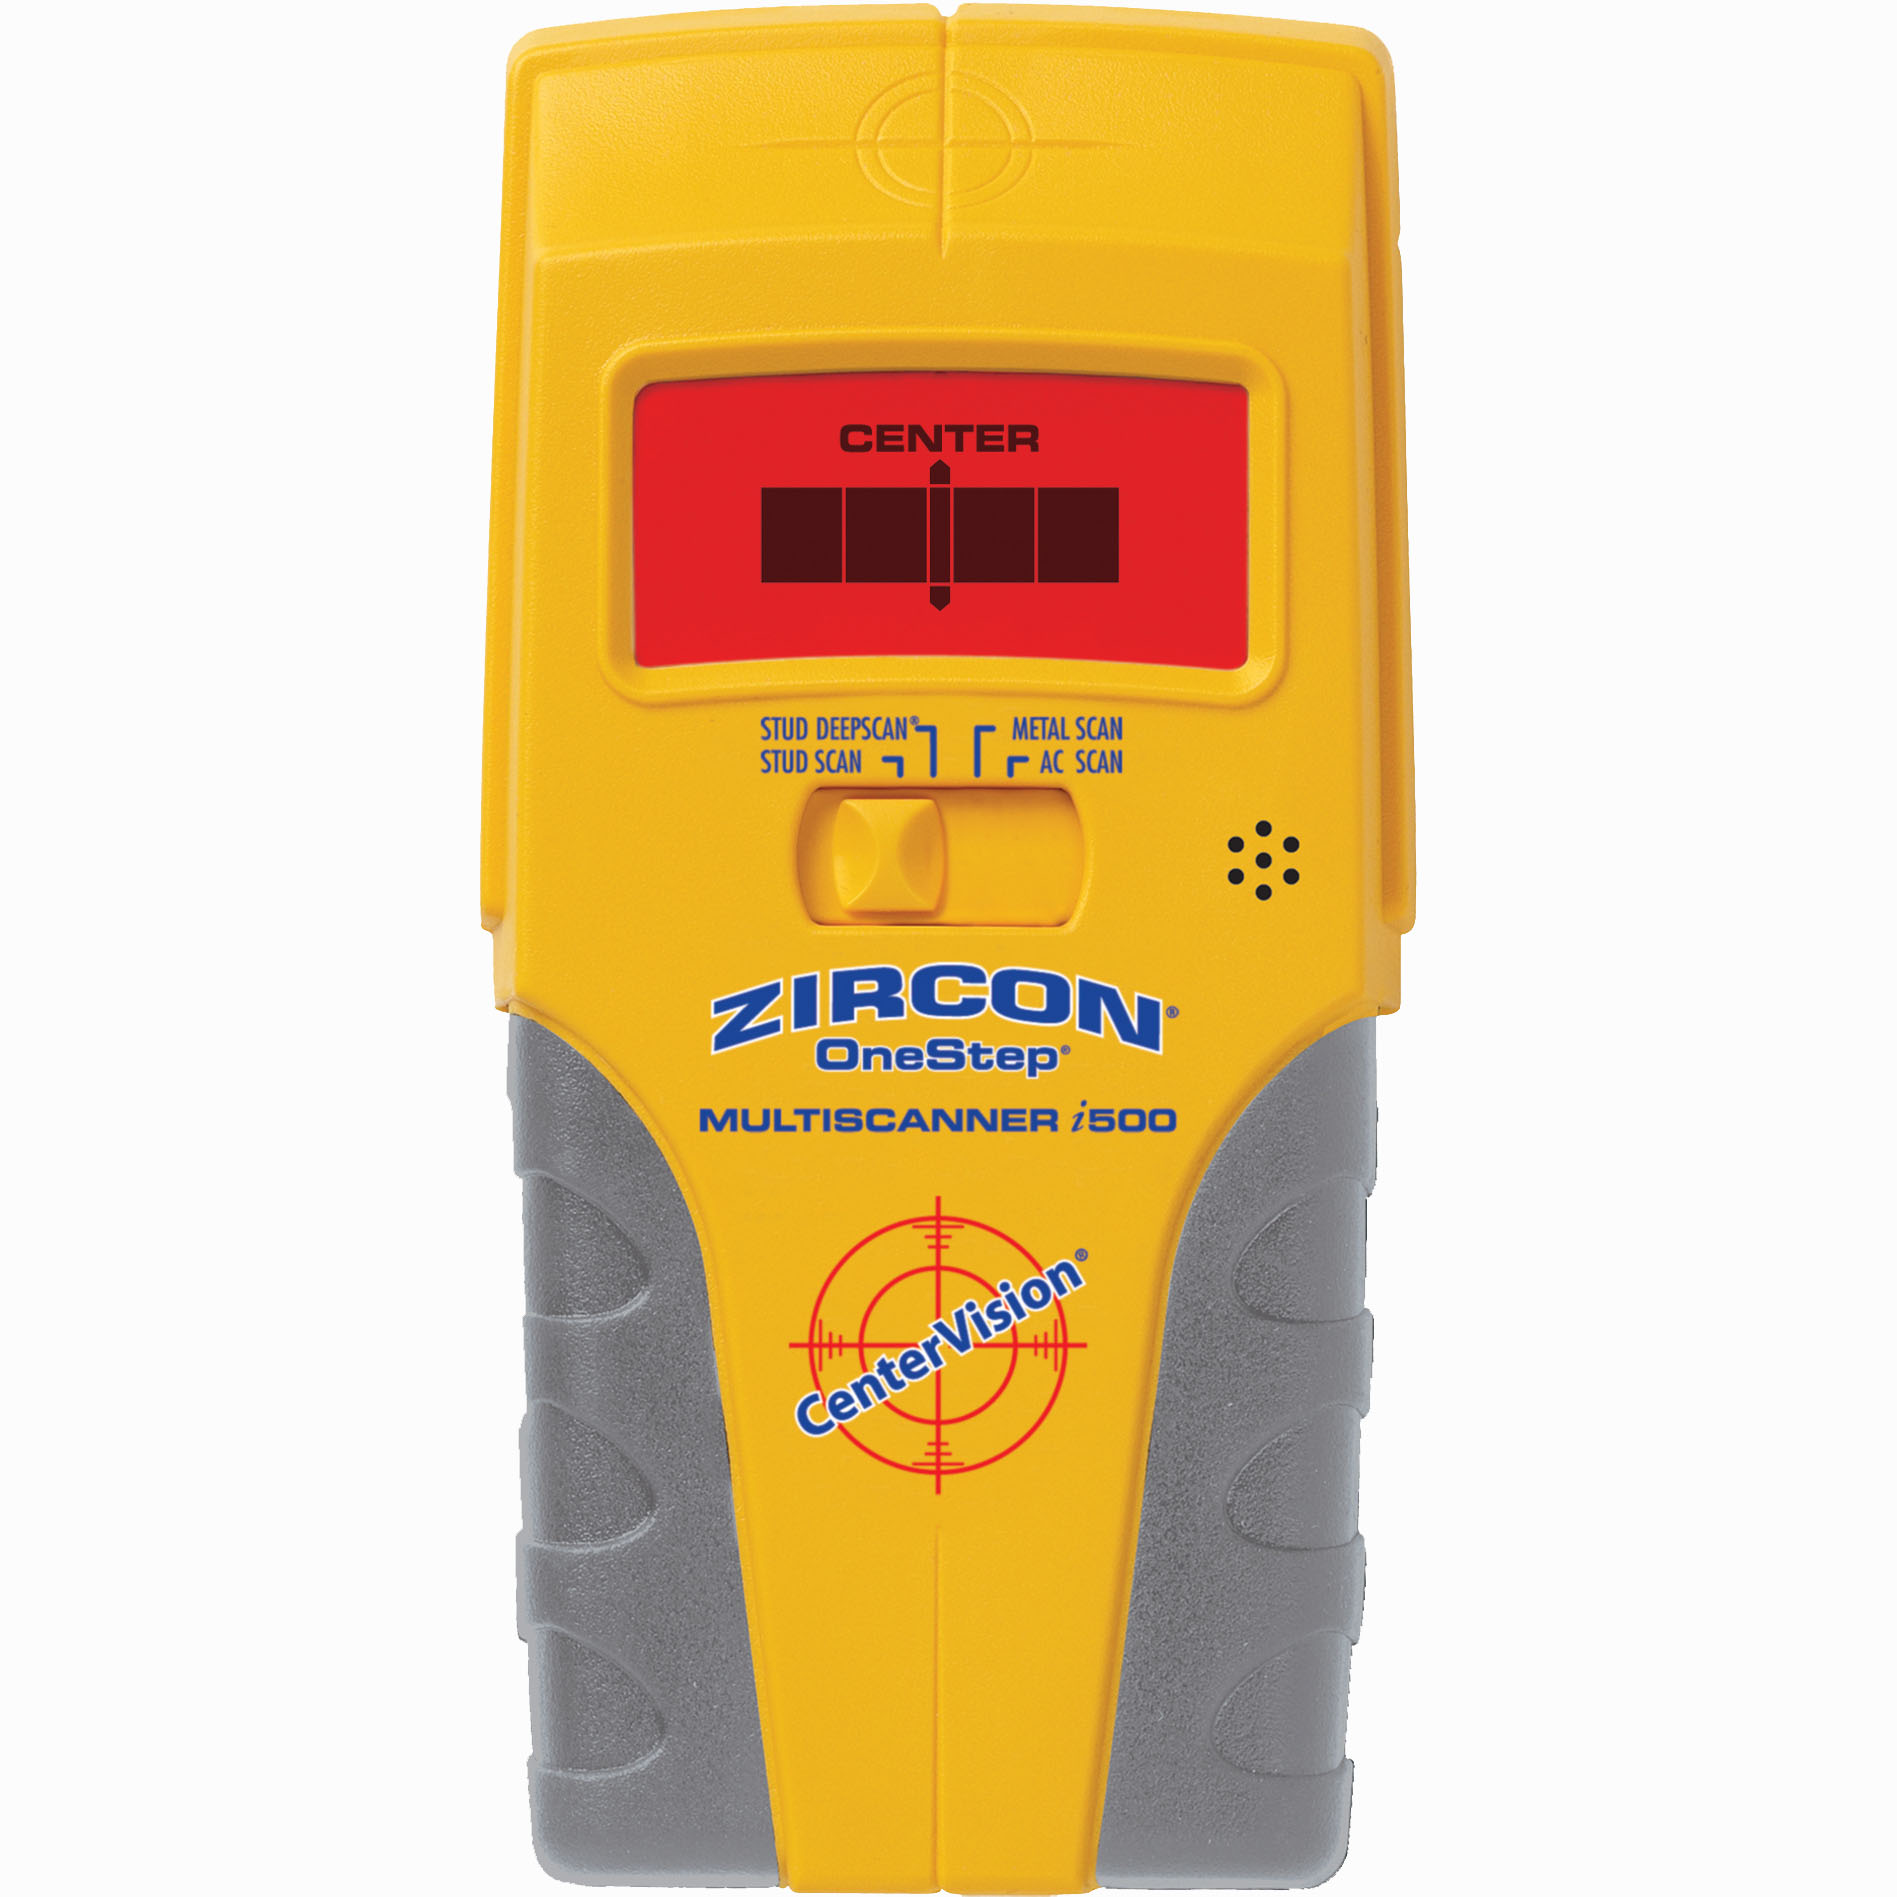 Zircon MultiScanner i500 OneStep